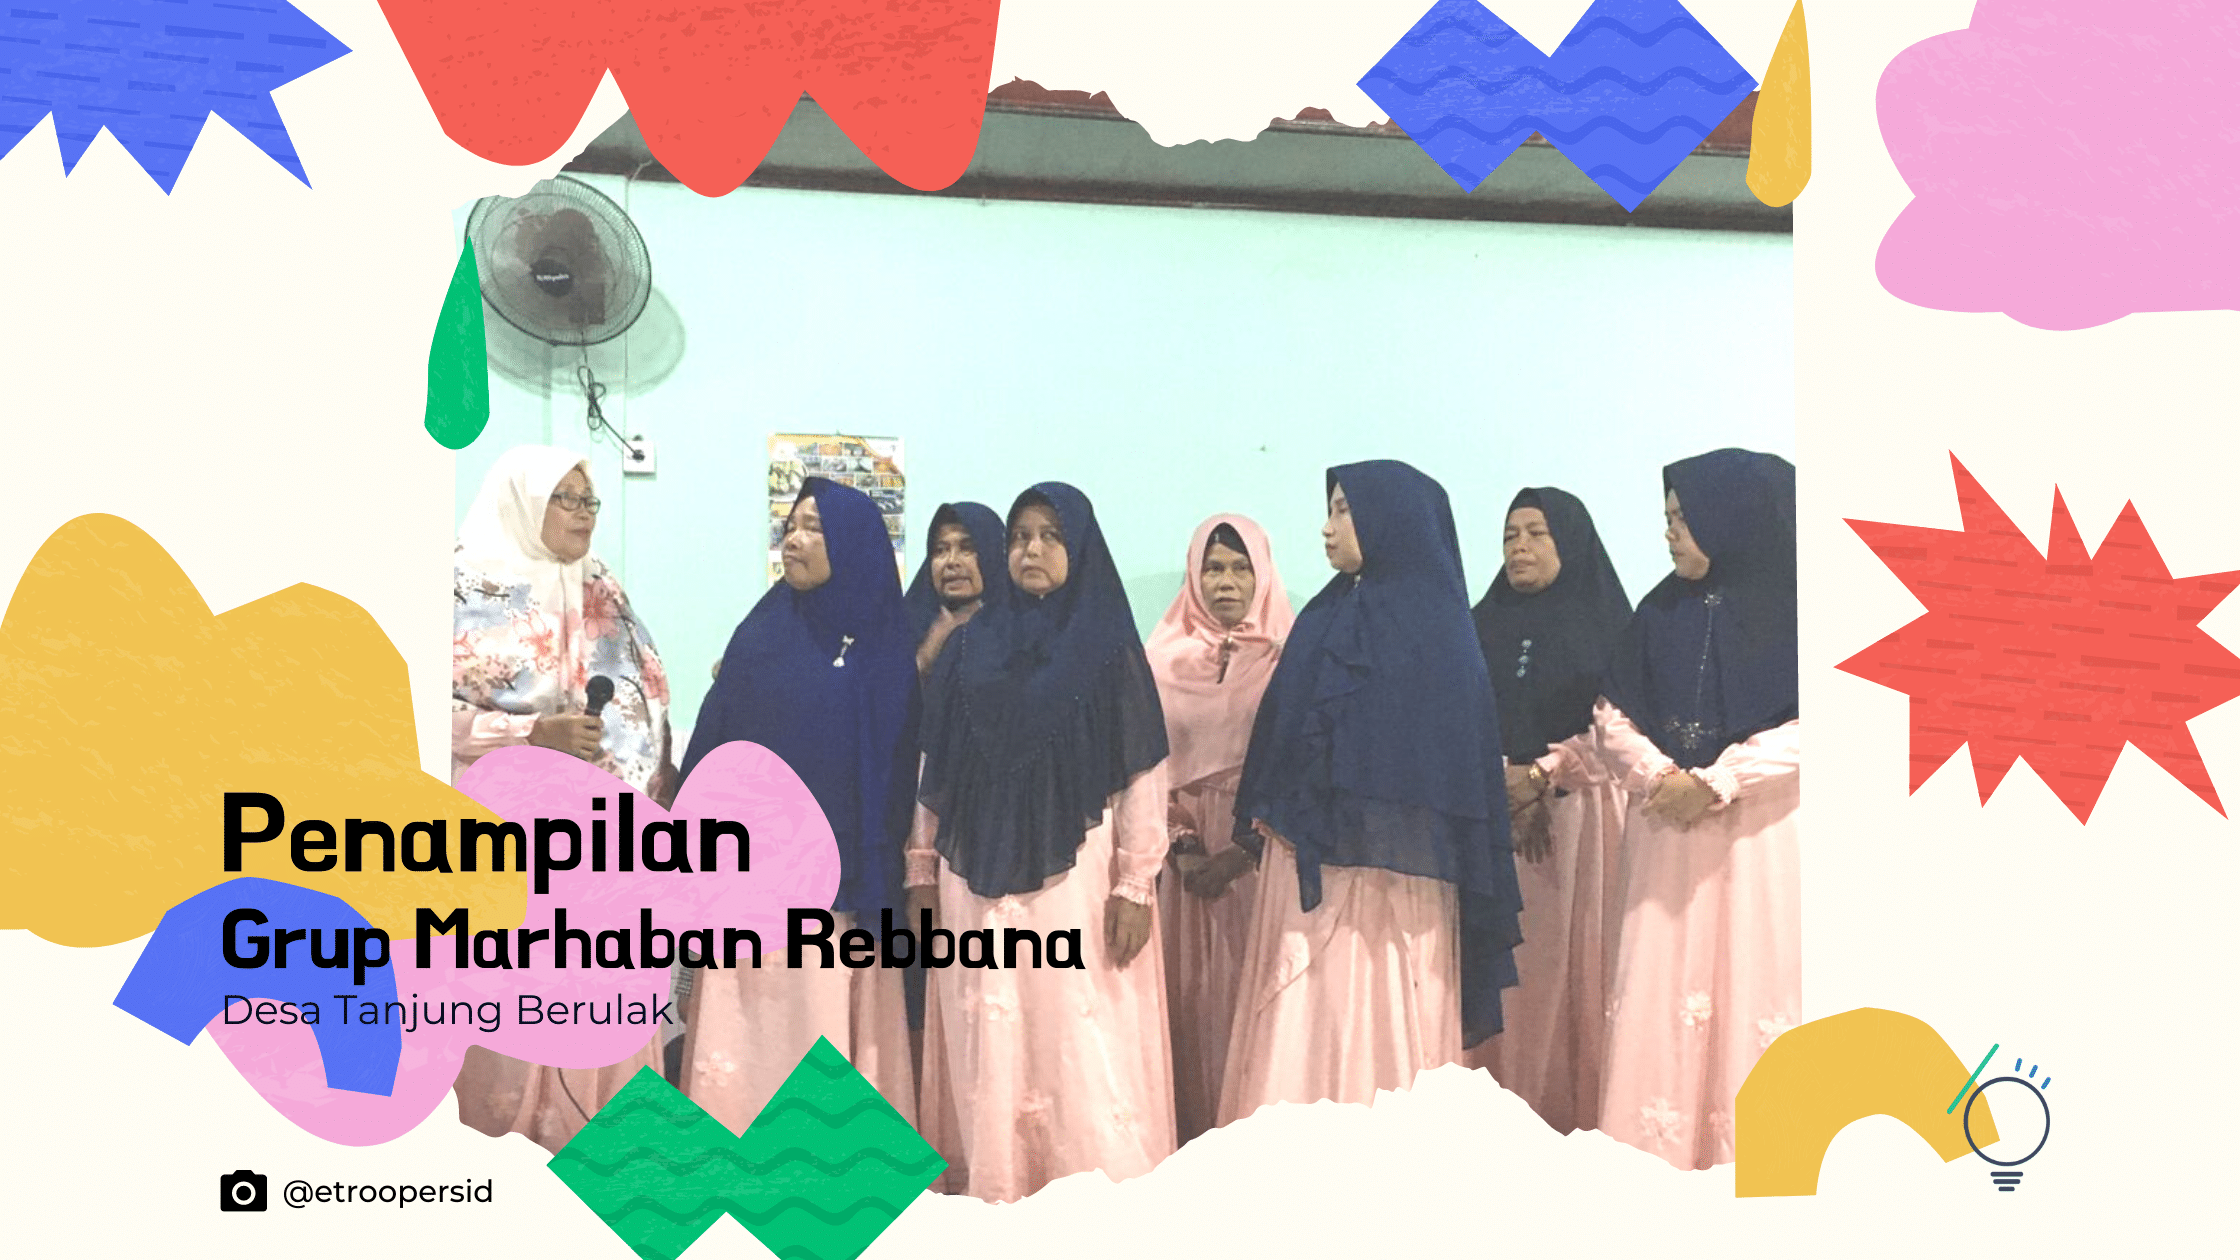 Penampilan Grup Marhaban Rebbana Desa Tanjung Berulak